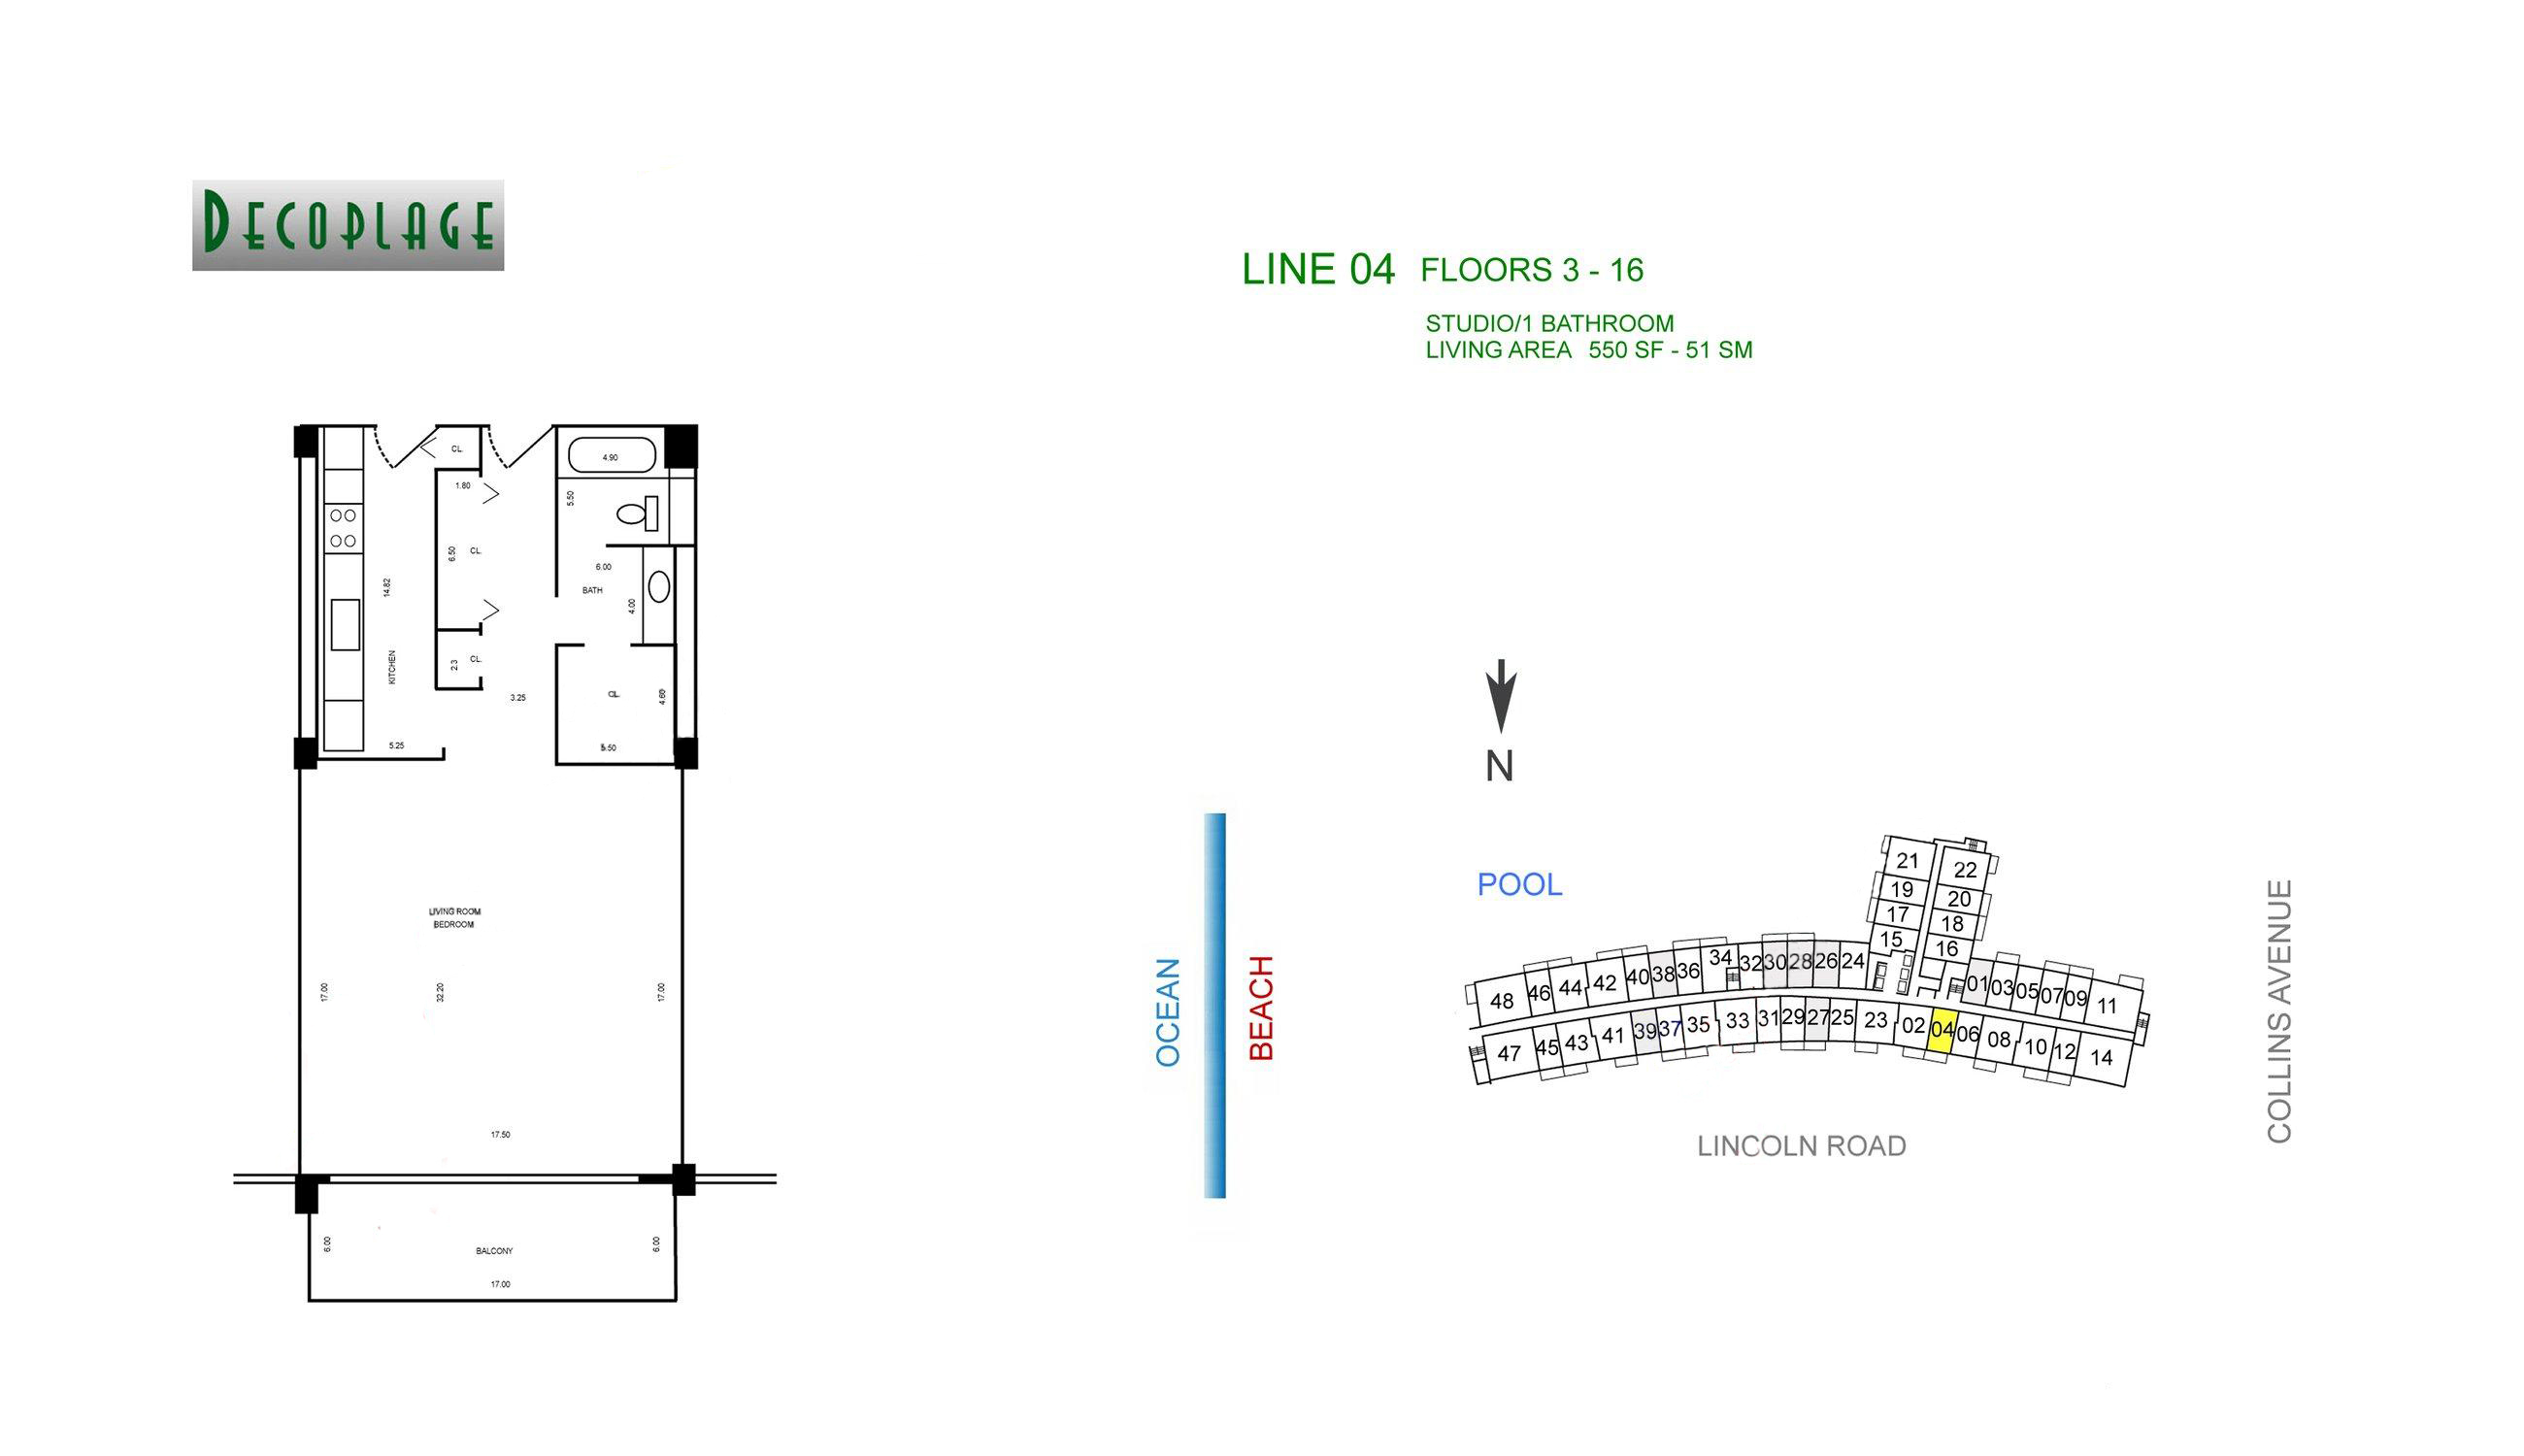 Decoplage Lines 04 Floors 3-16